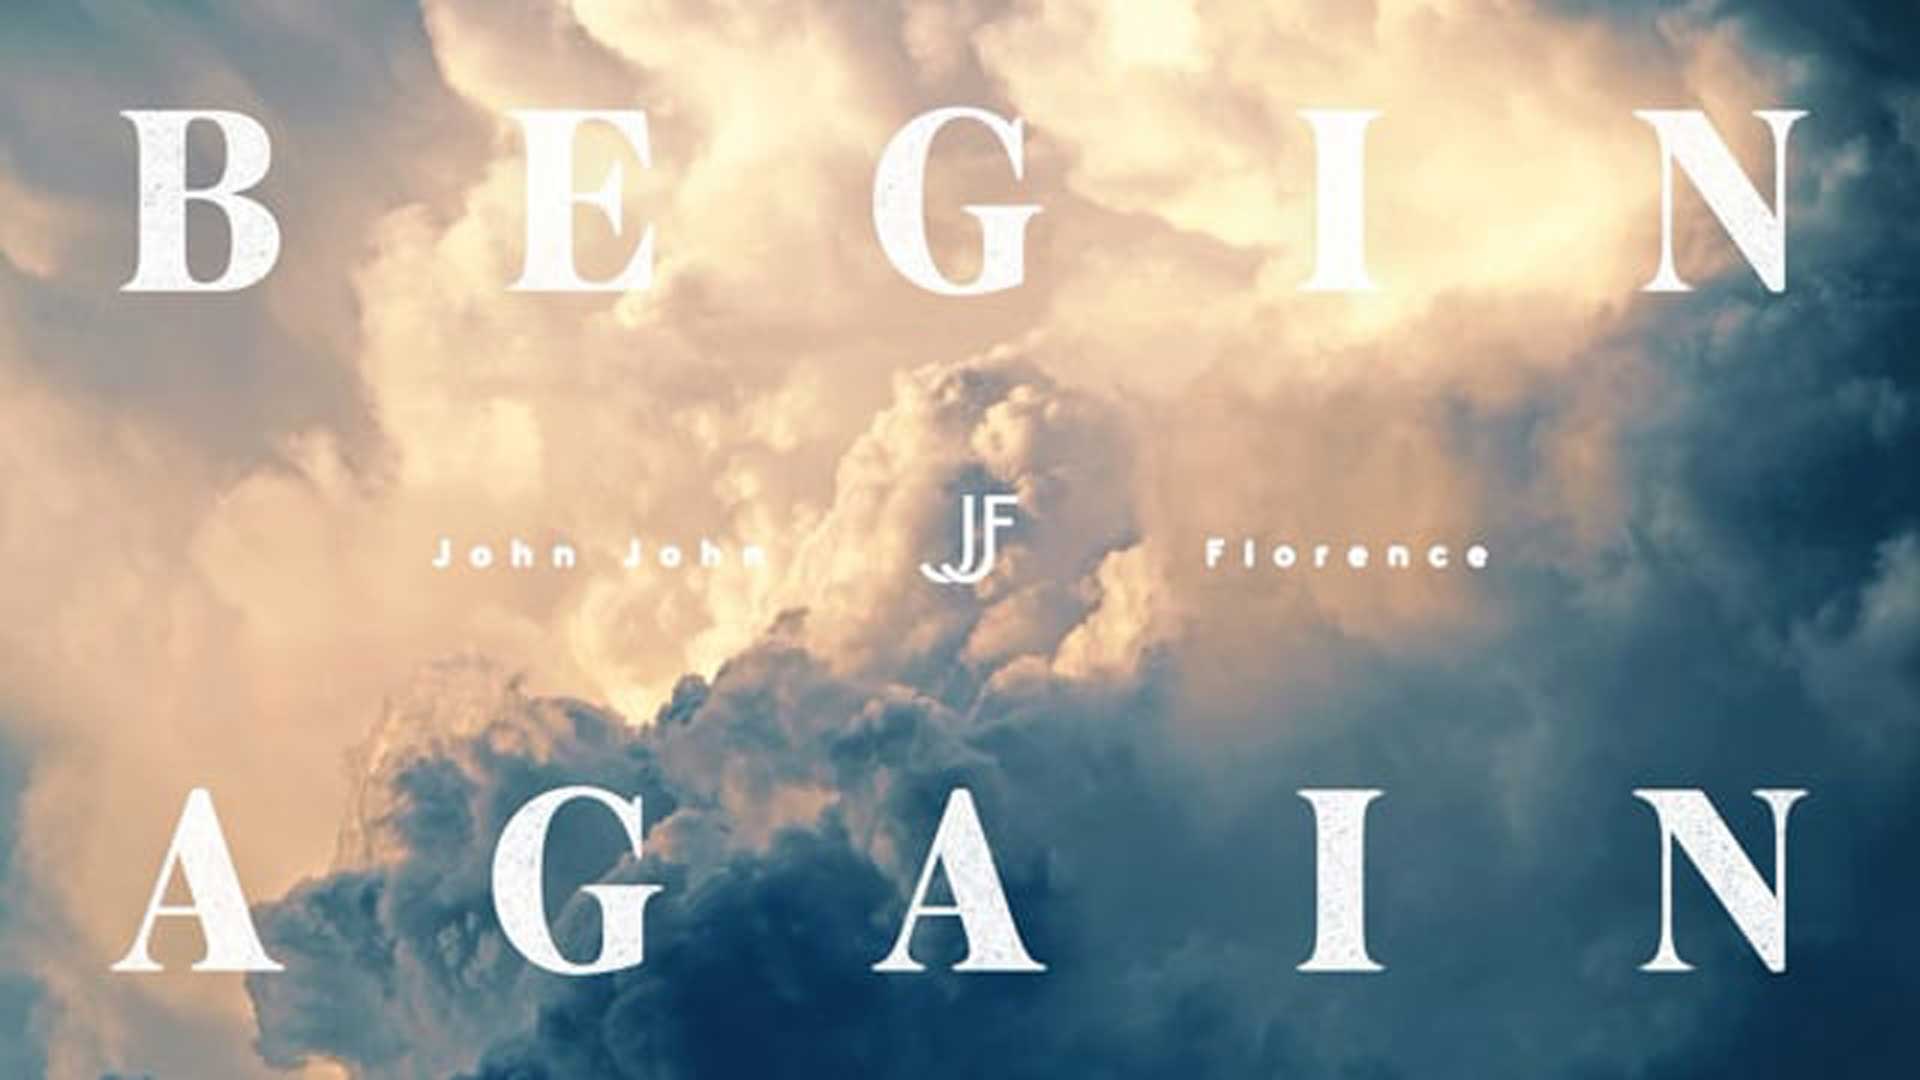 John John Florence — “Begin Again”